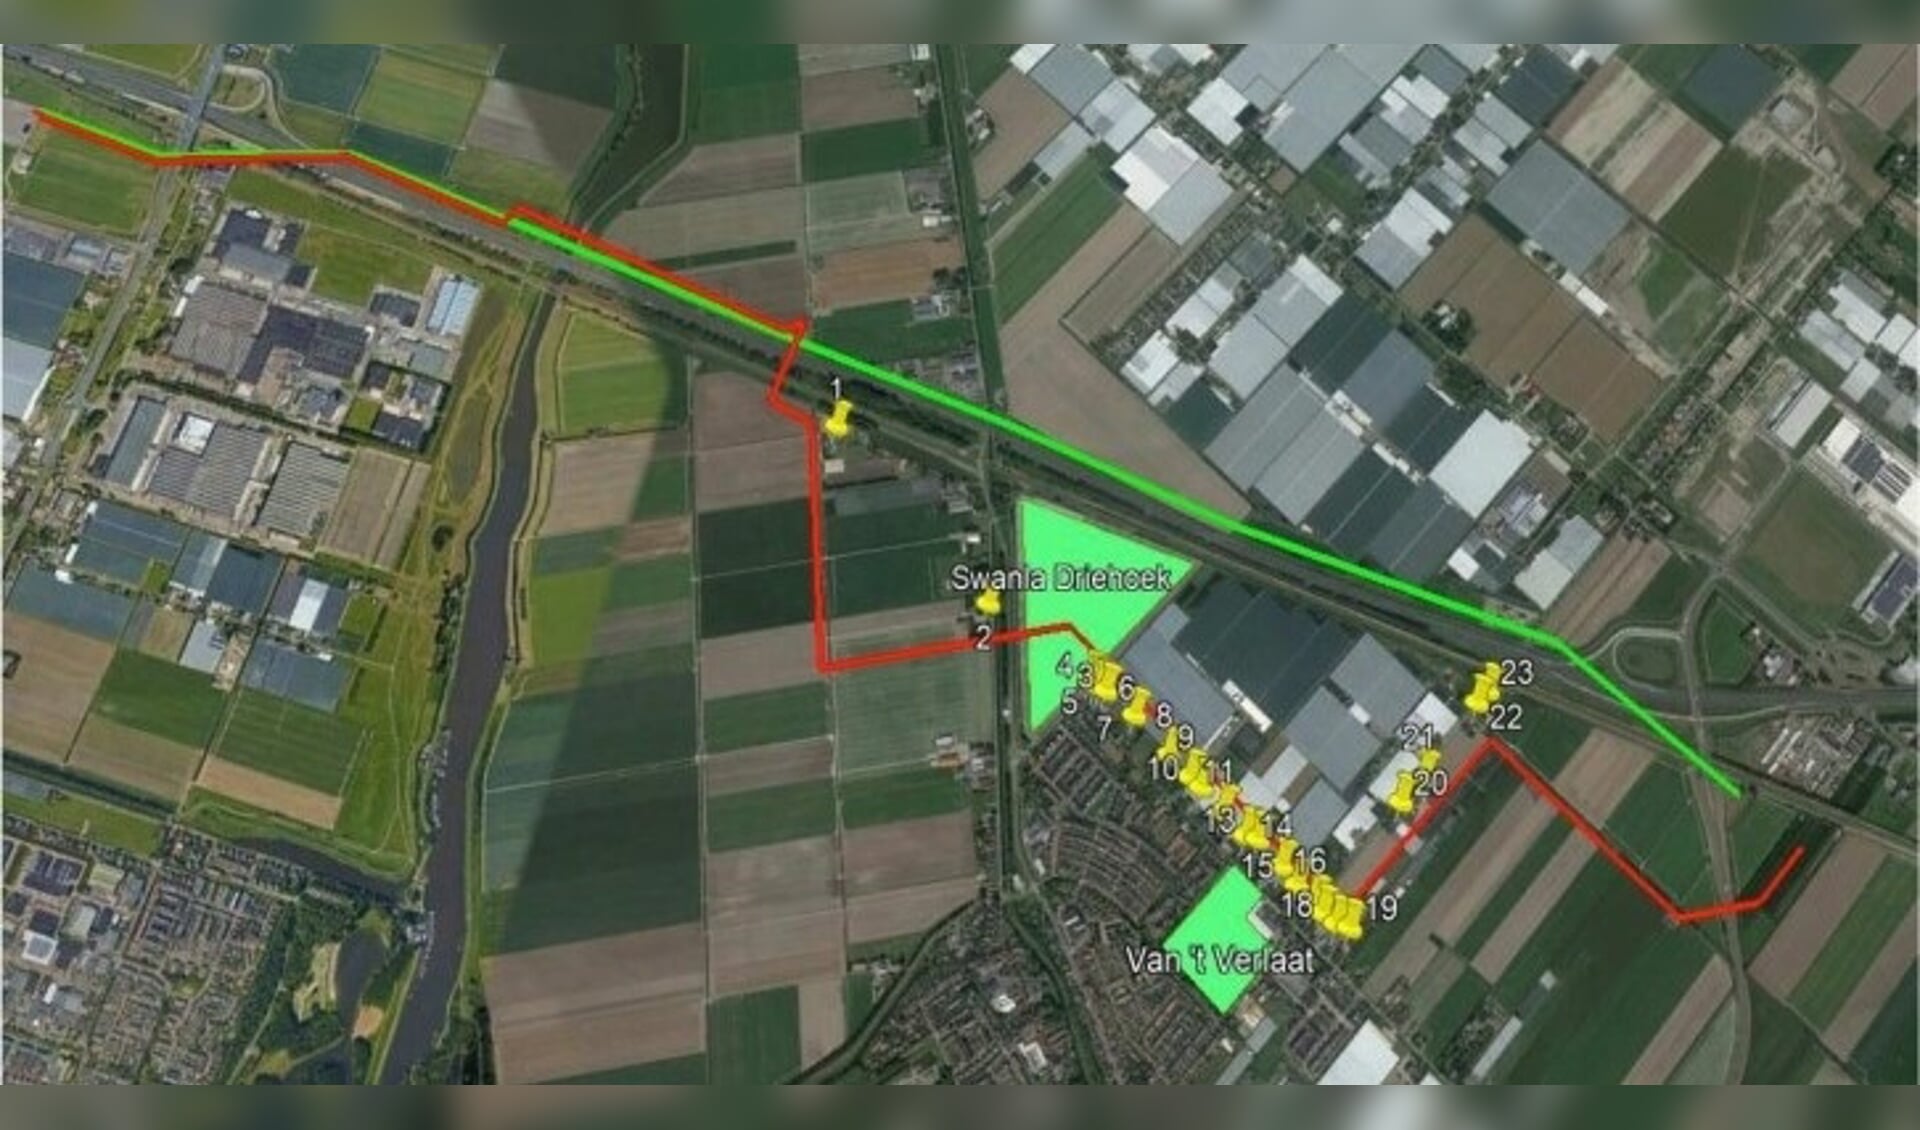 Het in januari door Tennet voorgenomen tracé (in rood) en een in februari door bewoners aangedragen andere ligging van de kabels (groene lijn). Voor beide tracés heeft Tennet nu alternatieven onderzocht, die komende week worden besproken. 